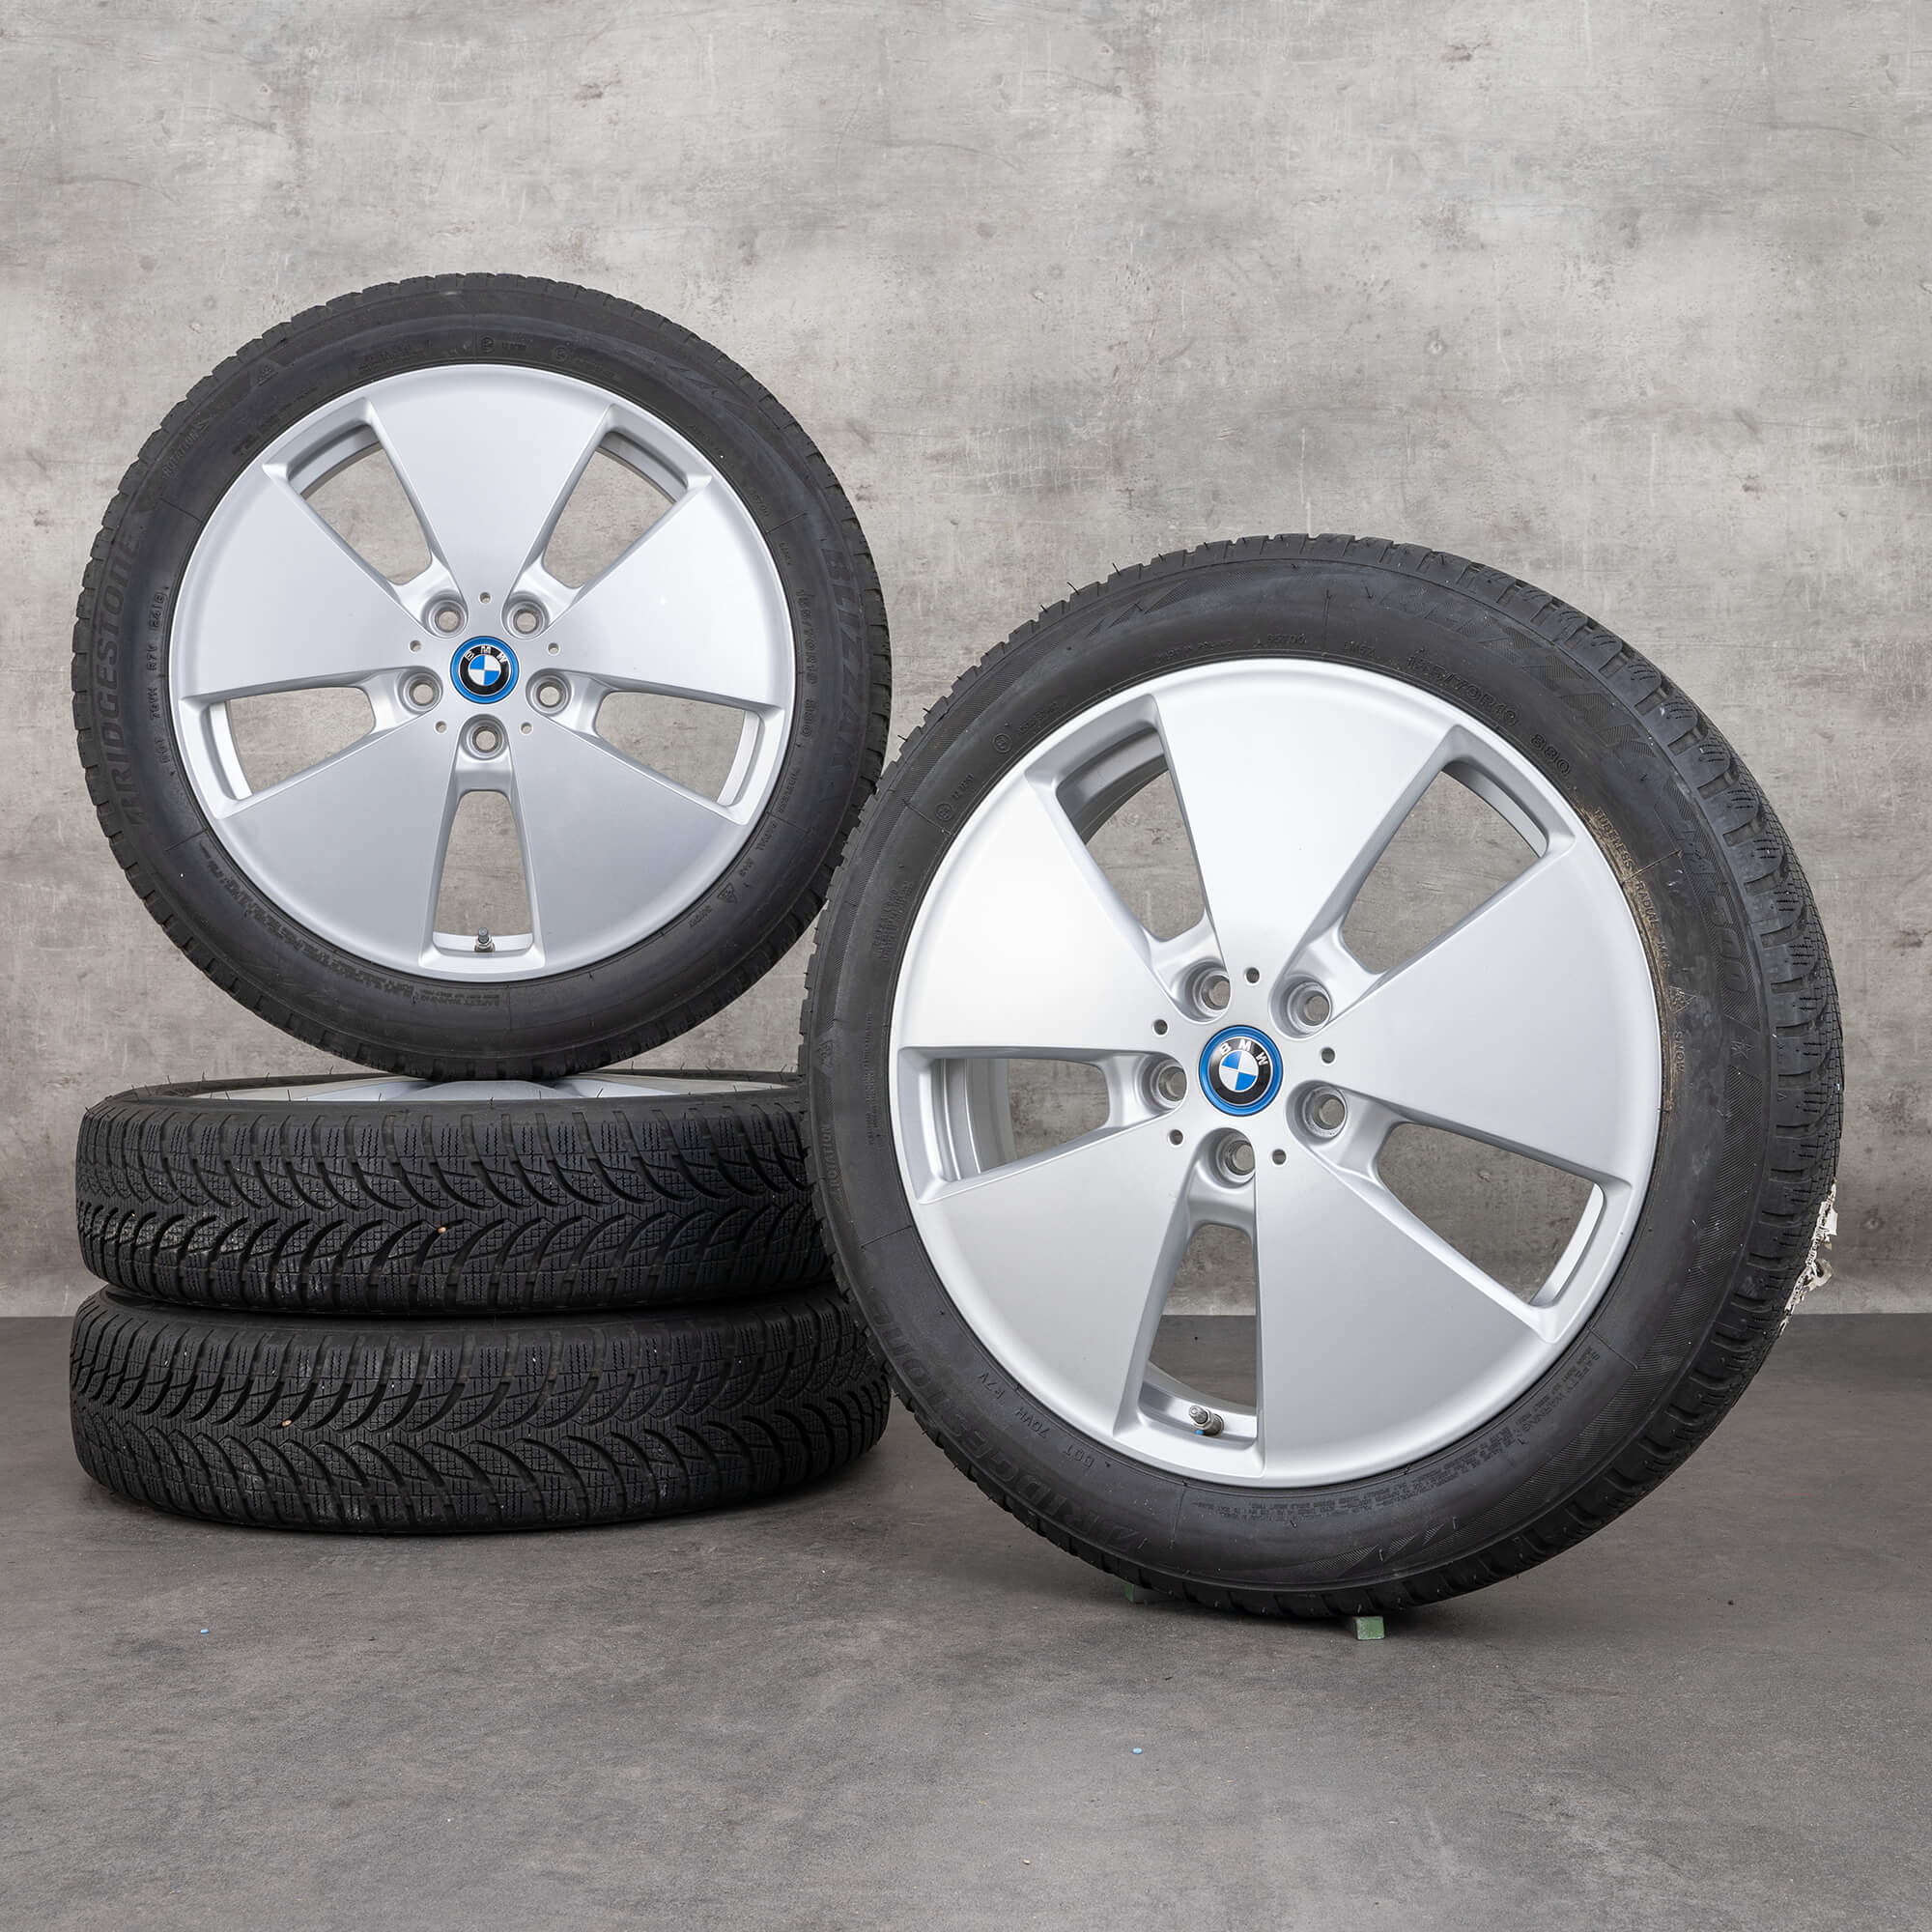 BMW jantes 19 pouces i3 aluminium pneus hiver roues style 427 6852053